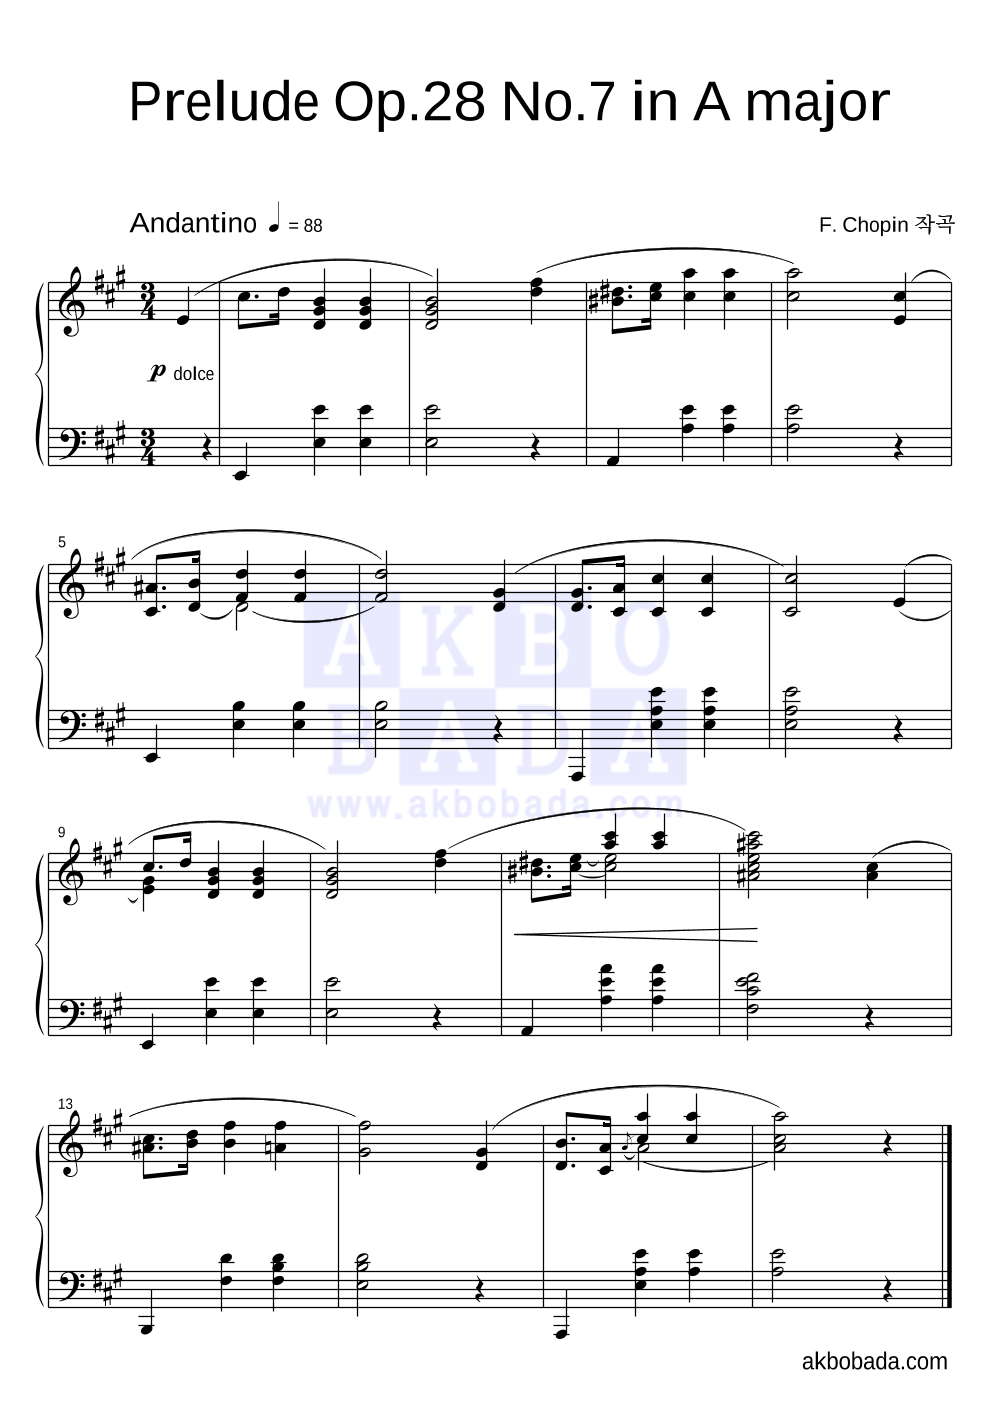 쇼팽 - Prelude Op.28 No.7 in A major 피아노 2단 악보 